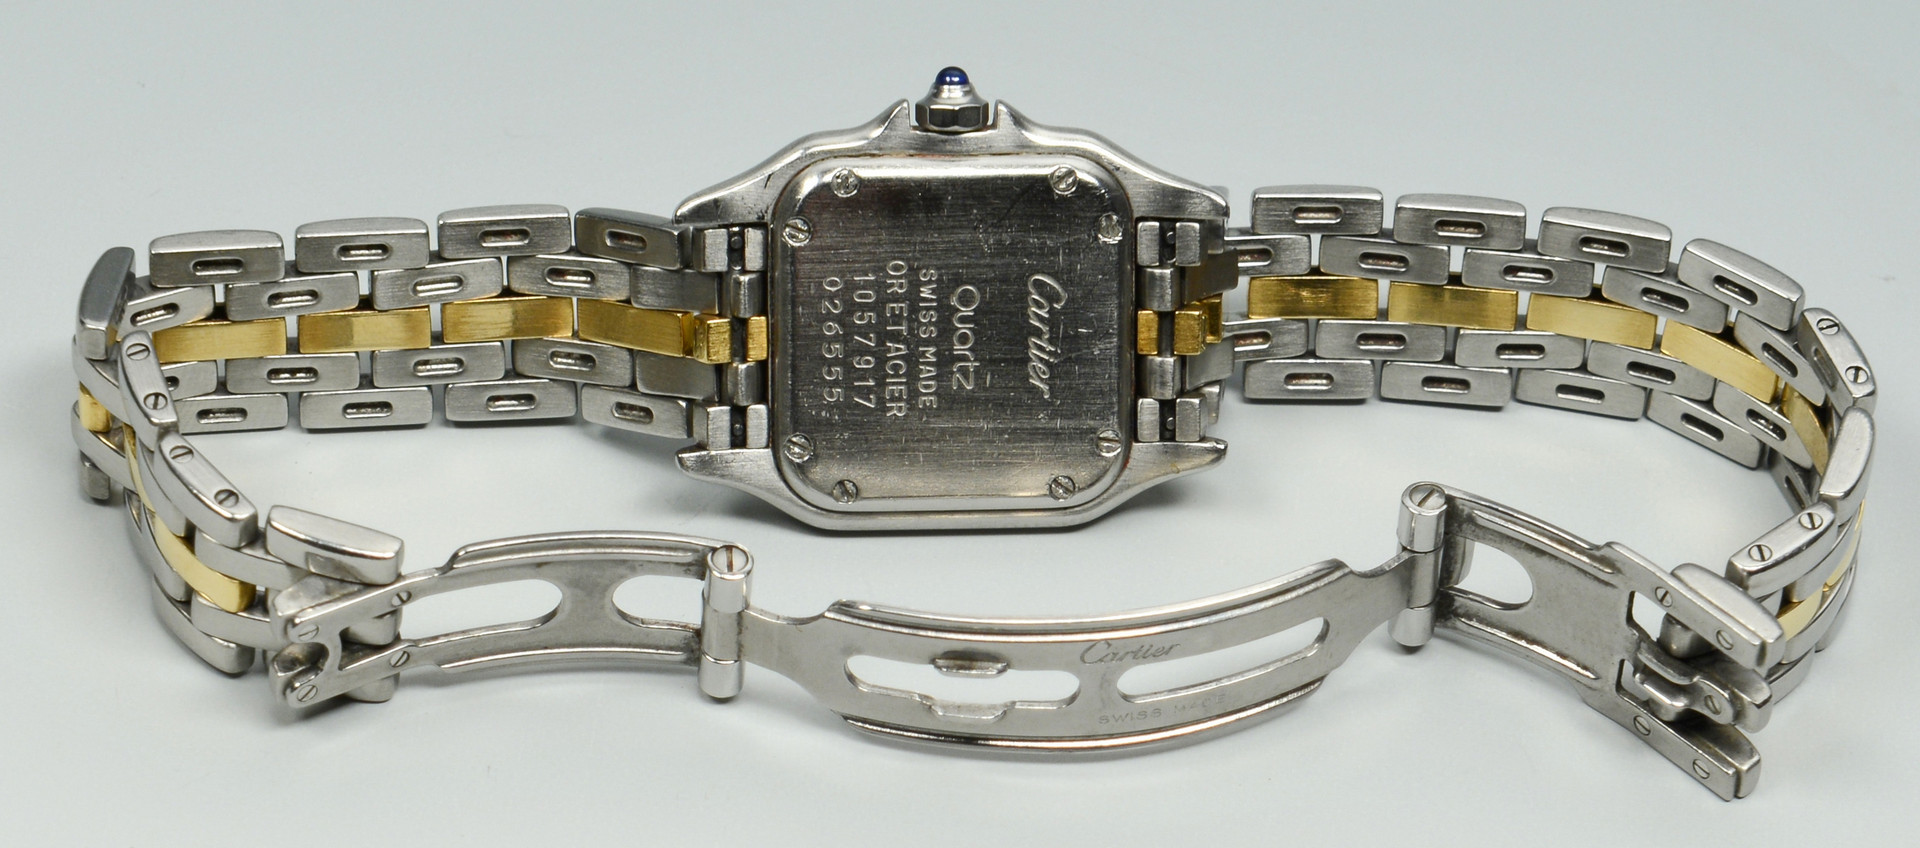 Lot 269: Cartier "Or et Acier" Watch